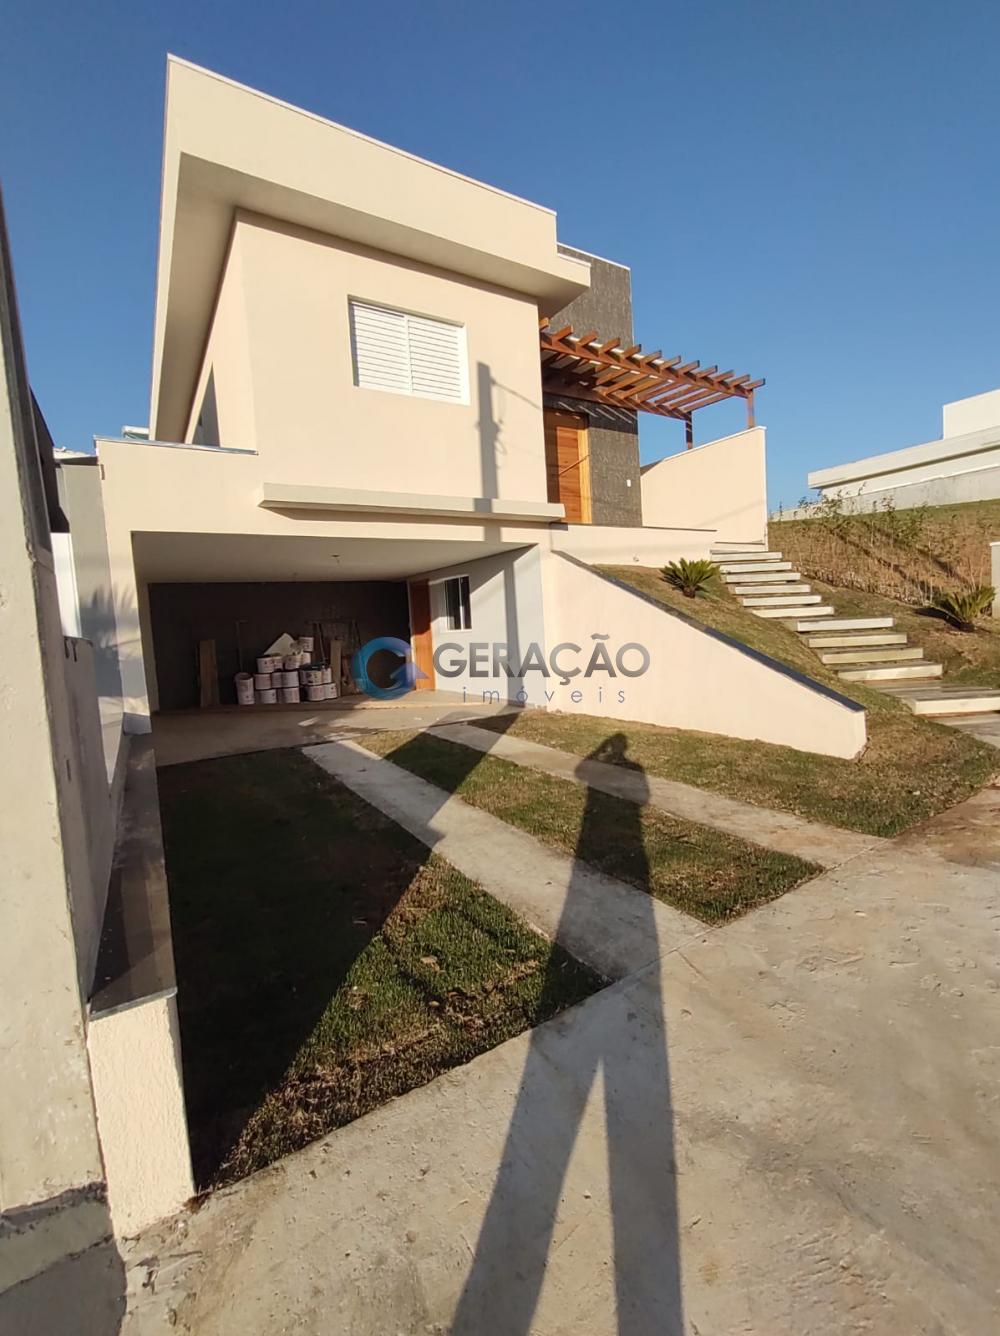 Comprar Casa / Condomínio em Jacareí R$ 896.000,00 - Foto 1